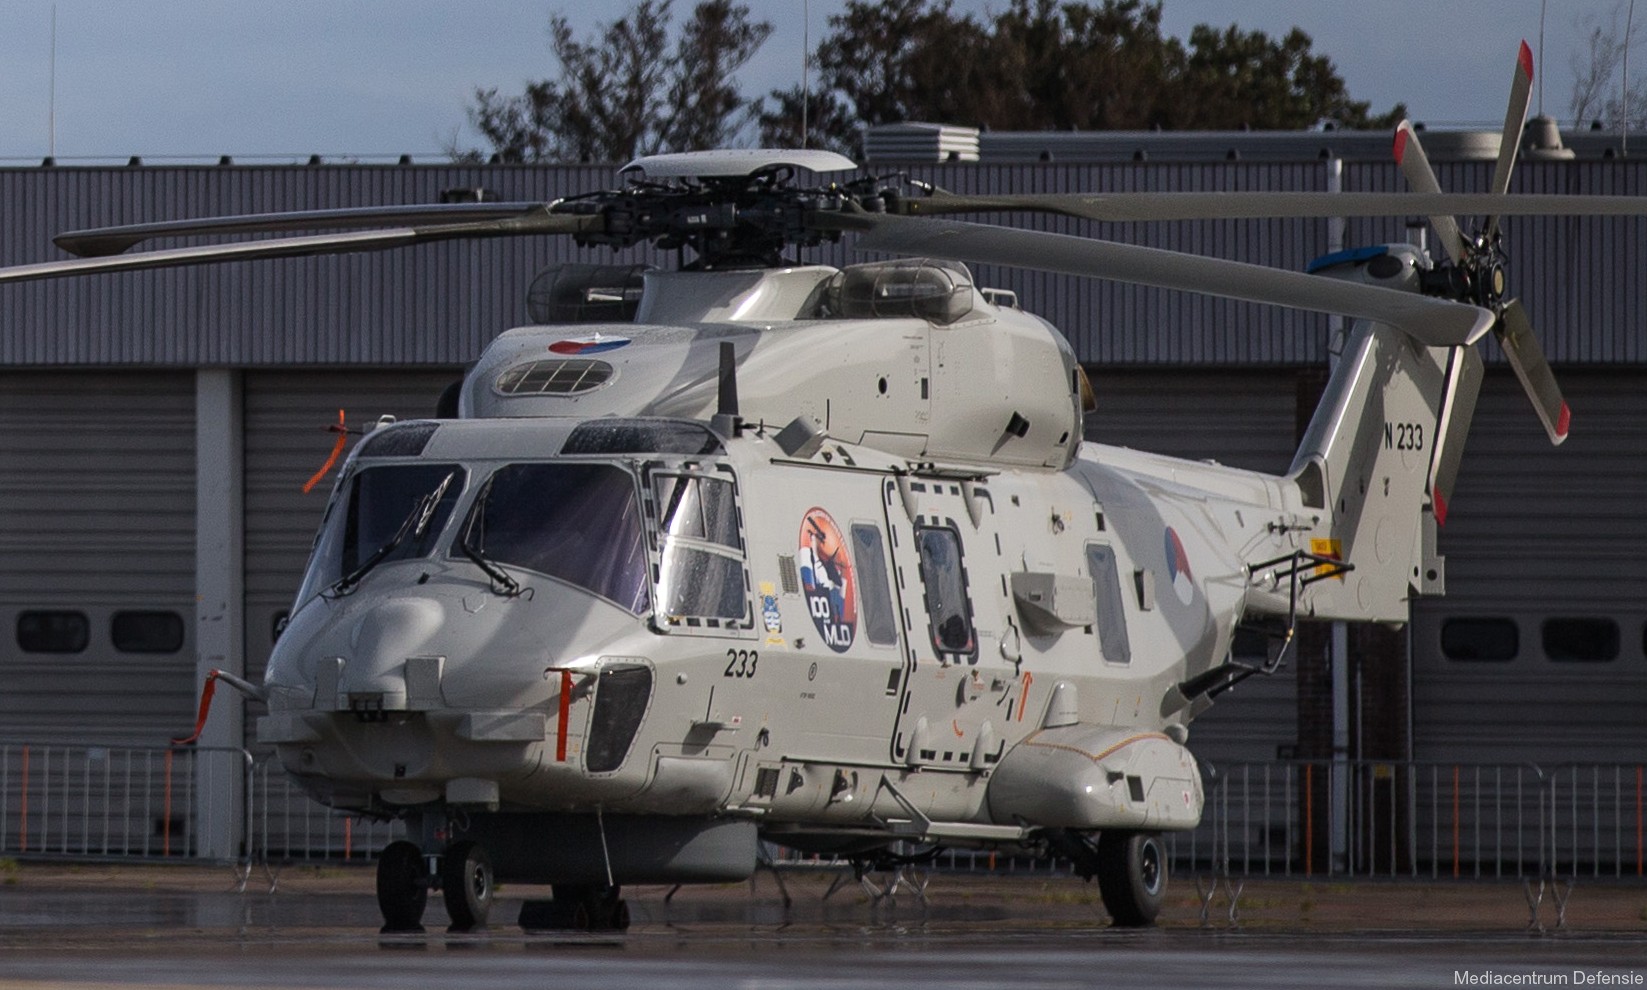 nh90 nfh helicopter royal netherlands navy koninklijke marine n-233 03